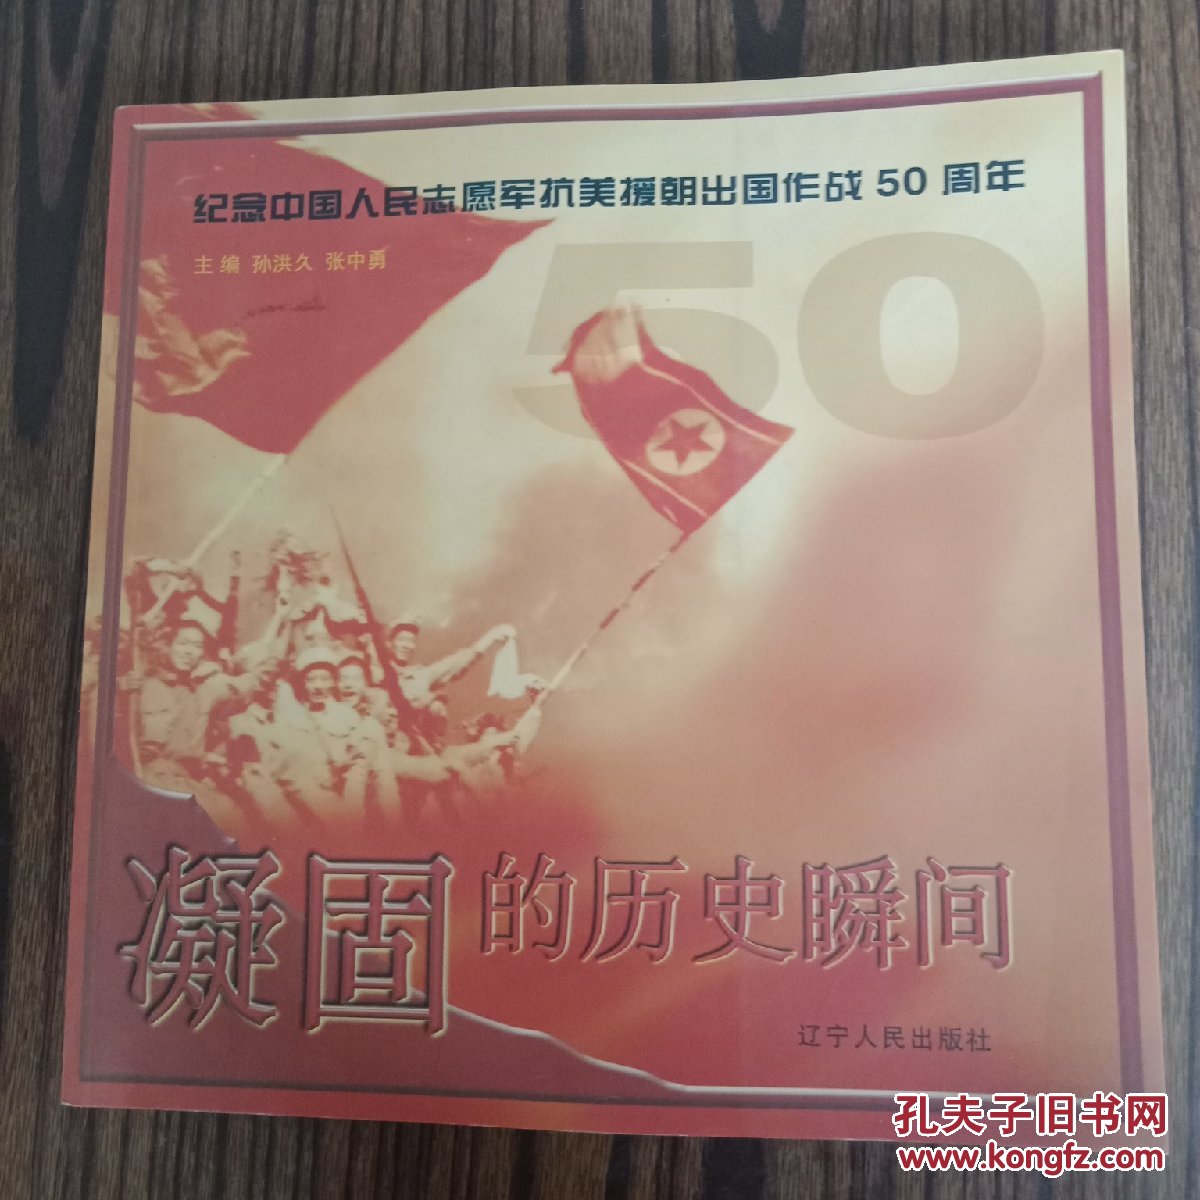 凝固的历史瞬间:纪念中国人民志愿军抗美援朝出国作战50周年